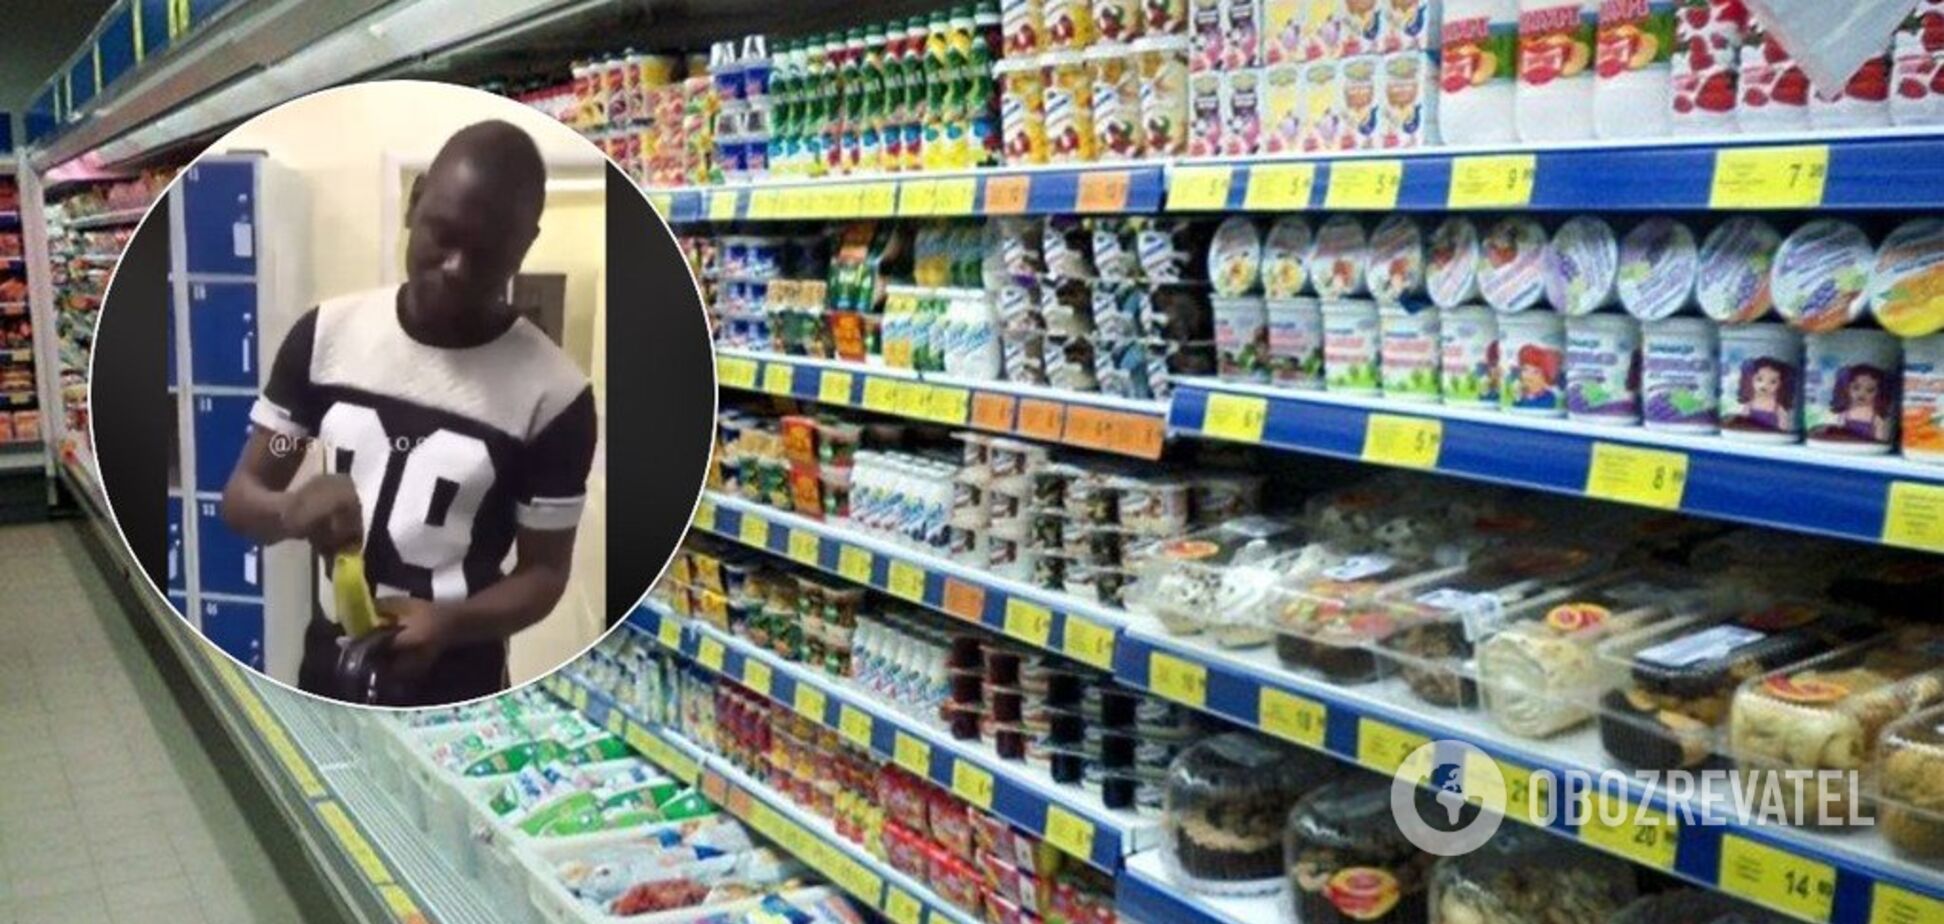 У супермаркеті Києва публічно принизили іноземця